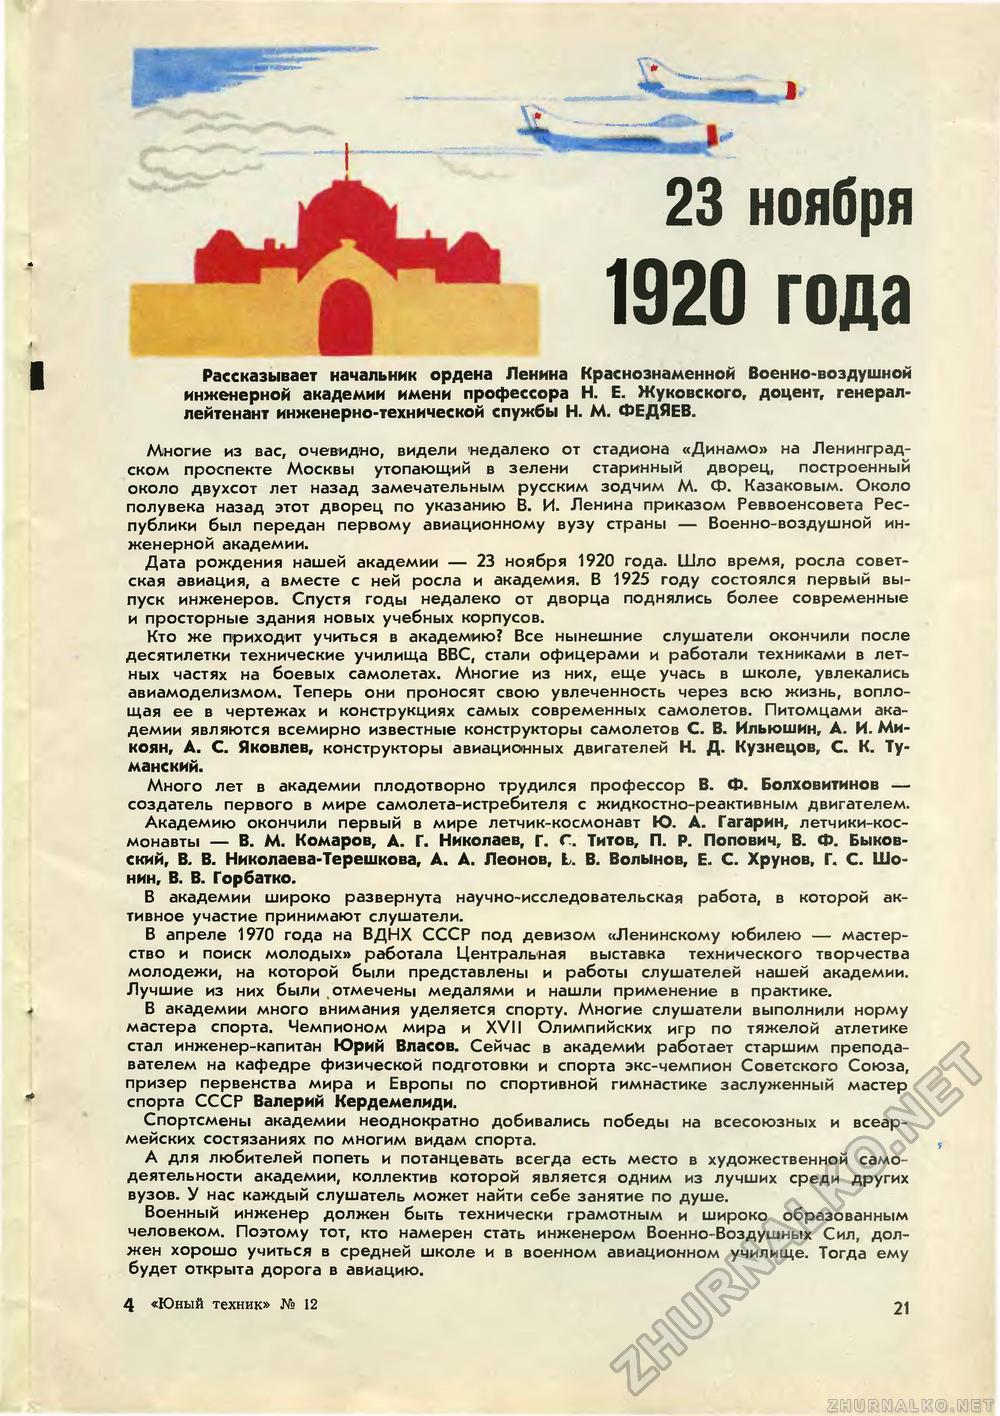   1970-12,  23